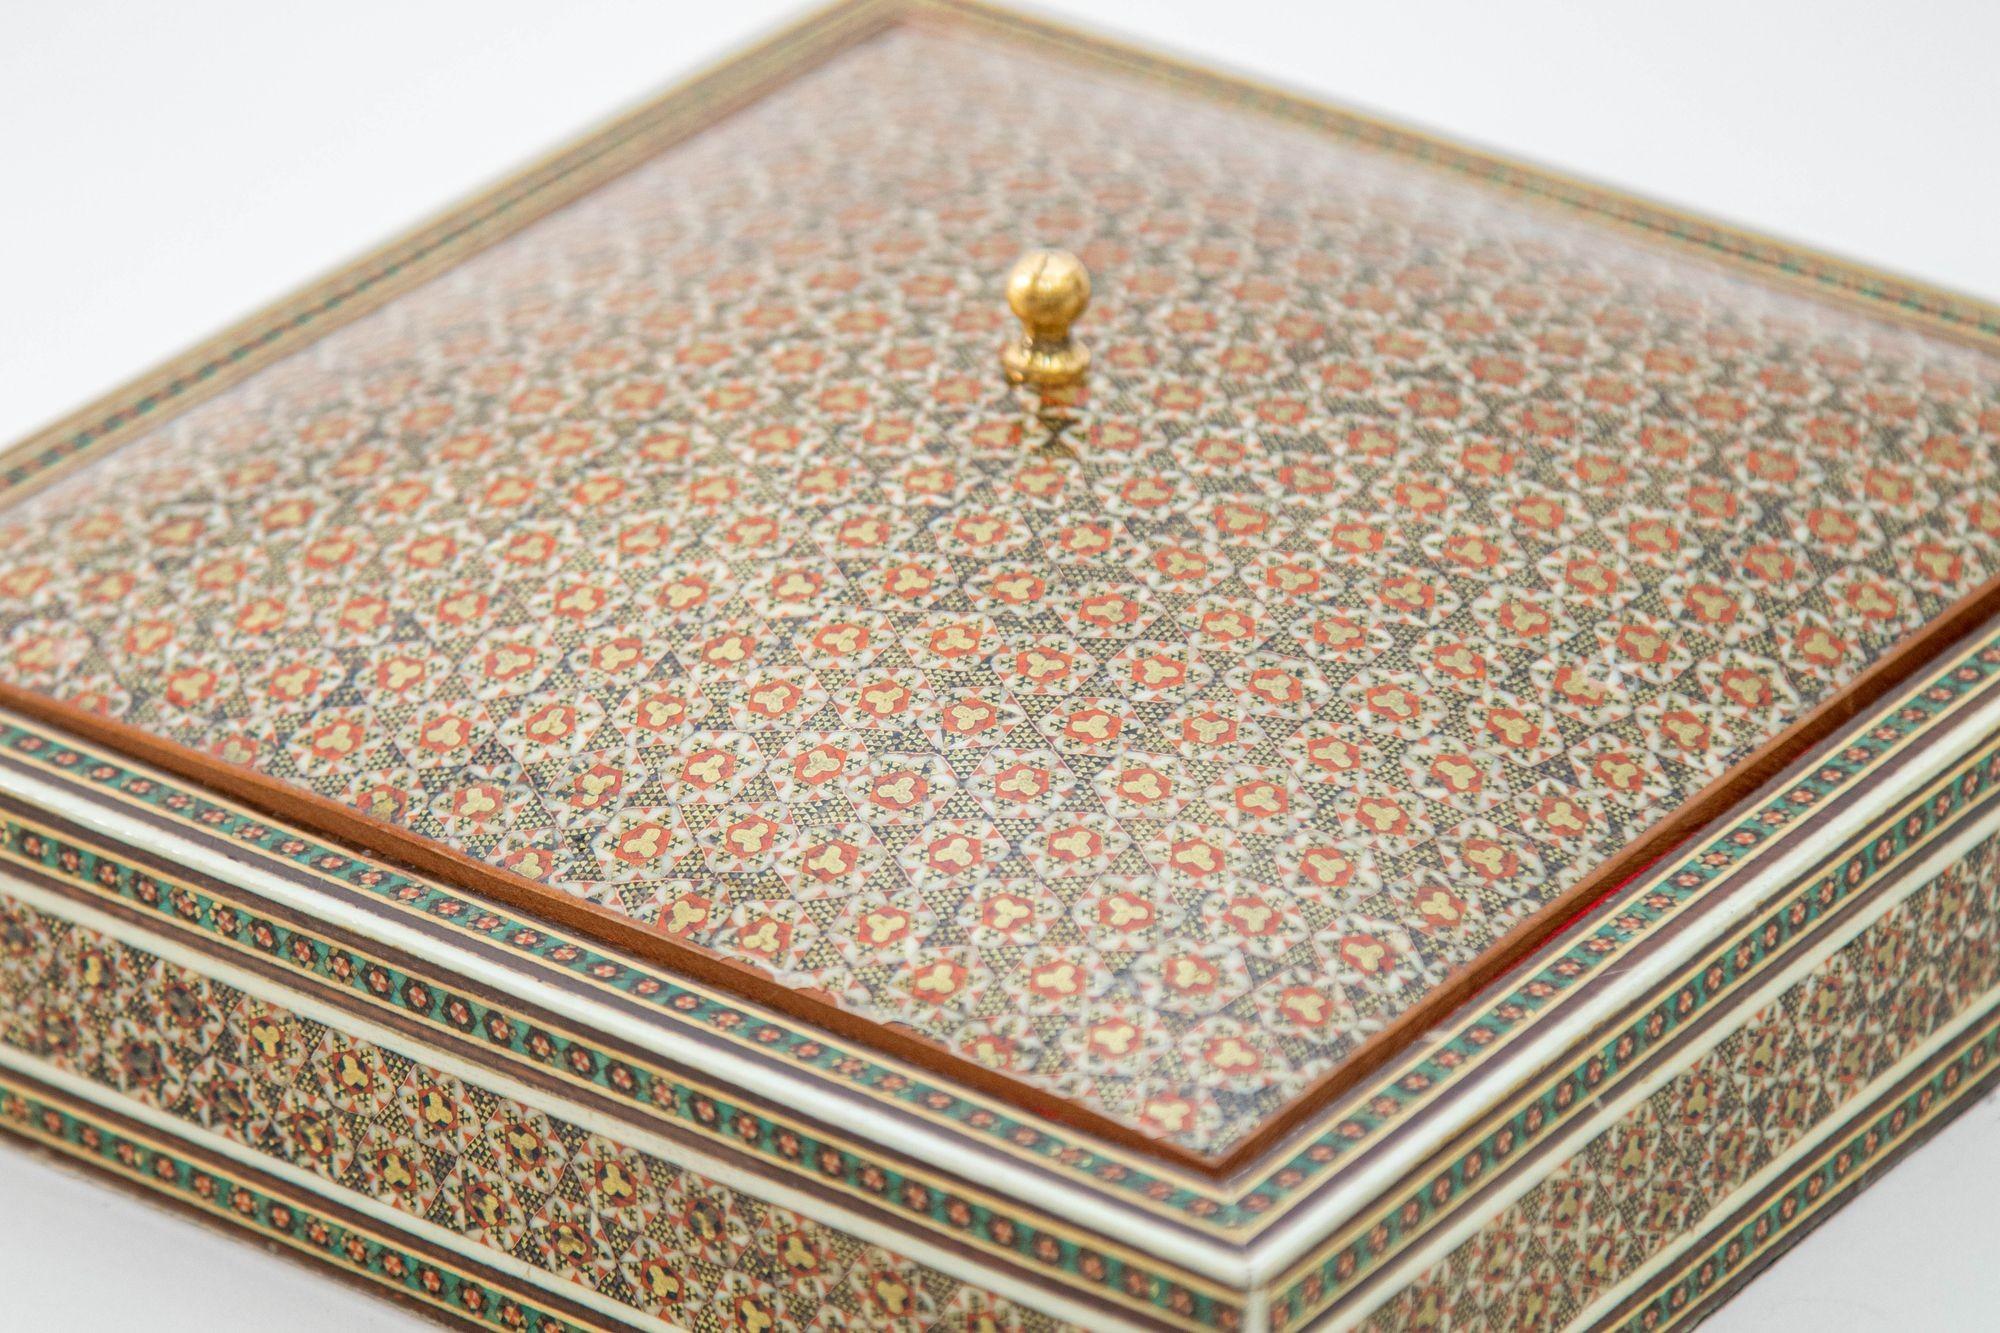 1950er Jahre Anglo-indische, INDO- persische Stil Mikro-Mosaik eingelegten Schmuck-Box mit Deckel.
Große, aufwendig eingelegte Schachtel im mittelöstlichen persischen Stil mit floralem und geometrischem islamisch-maurischem Design in rechteckiger